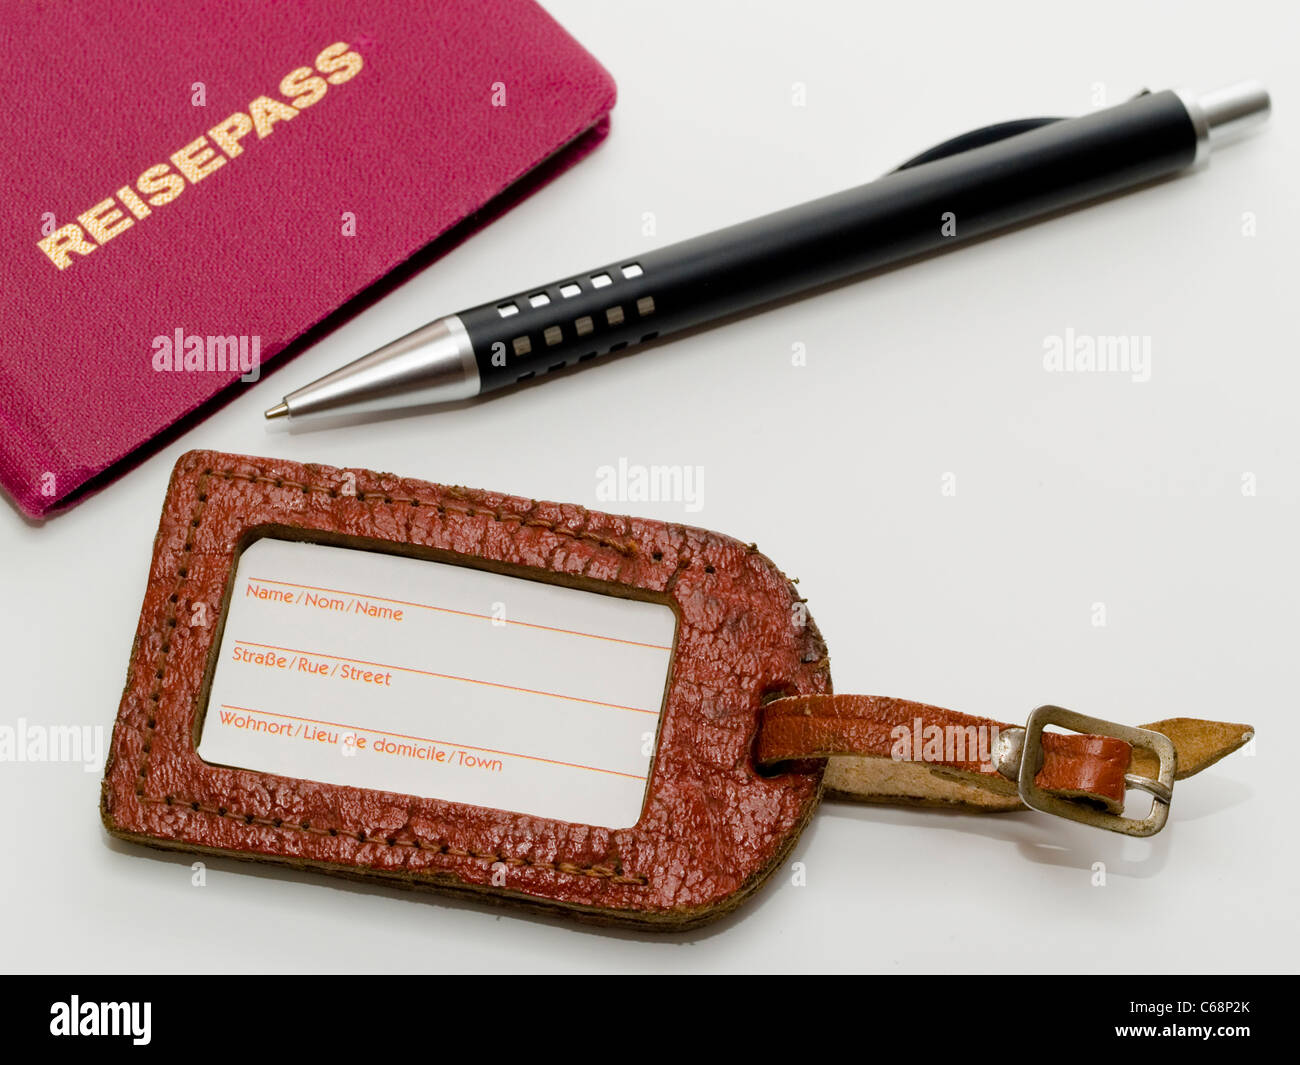 Alter Kofferanhänger, daneben liegt ein Reisepass und ein Stift | vecchia etichetta bagaglio, un passaporto in corso di validità e di una penna si trova oltre questo Foto Stock